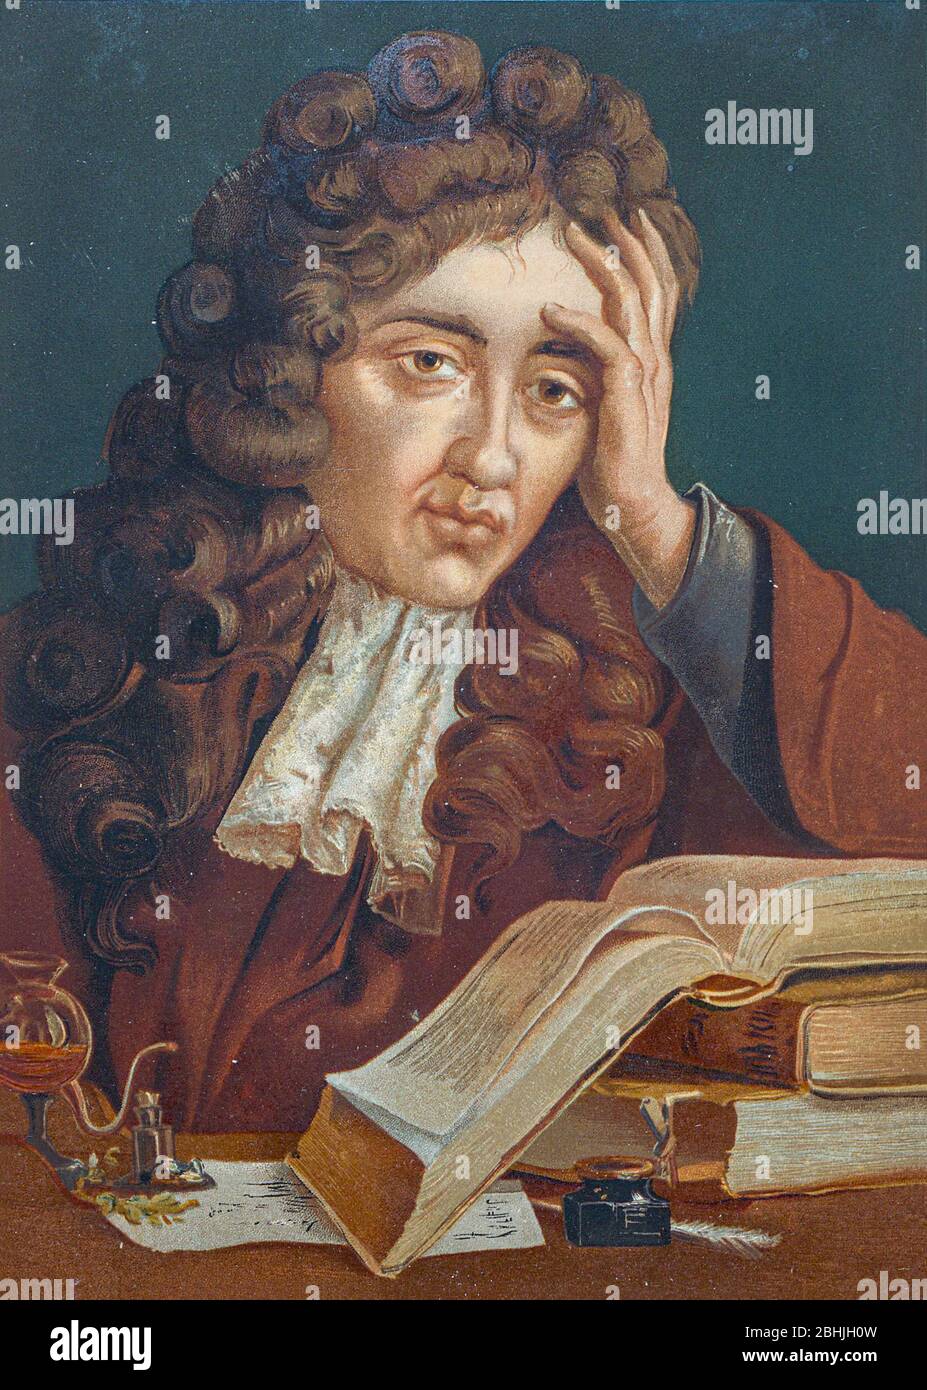 Robert Boyle FRS (25. Januar 1627 – 31. Dezember 1691) war ein anglo-irischer Naturphilosoph, Chemiker, Physiker und Erfinder. Boyle gilt heute weitgehend als der erste moderne Chemiker und einer der Pioniere der modernen experimentellen wissenschaftlichen Methode. Er ist am besten bekannt für Boyle's Gesetz, das beschreibt die umgekehrt proportional Beziehung zwischen dem absoluten Druck und Volumen eines Gases, wenn die Temperatur konstant gehalten wird innerhalb eines geschlossenen Systems. Unter seinen Werken gilt der skeptische Chymist als Eckstein im Bereich der Chemie. Er war ein frommer Anglikaner und ist bekannt Stockfoto